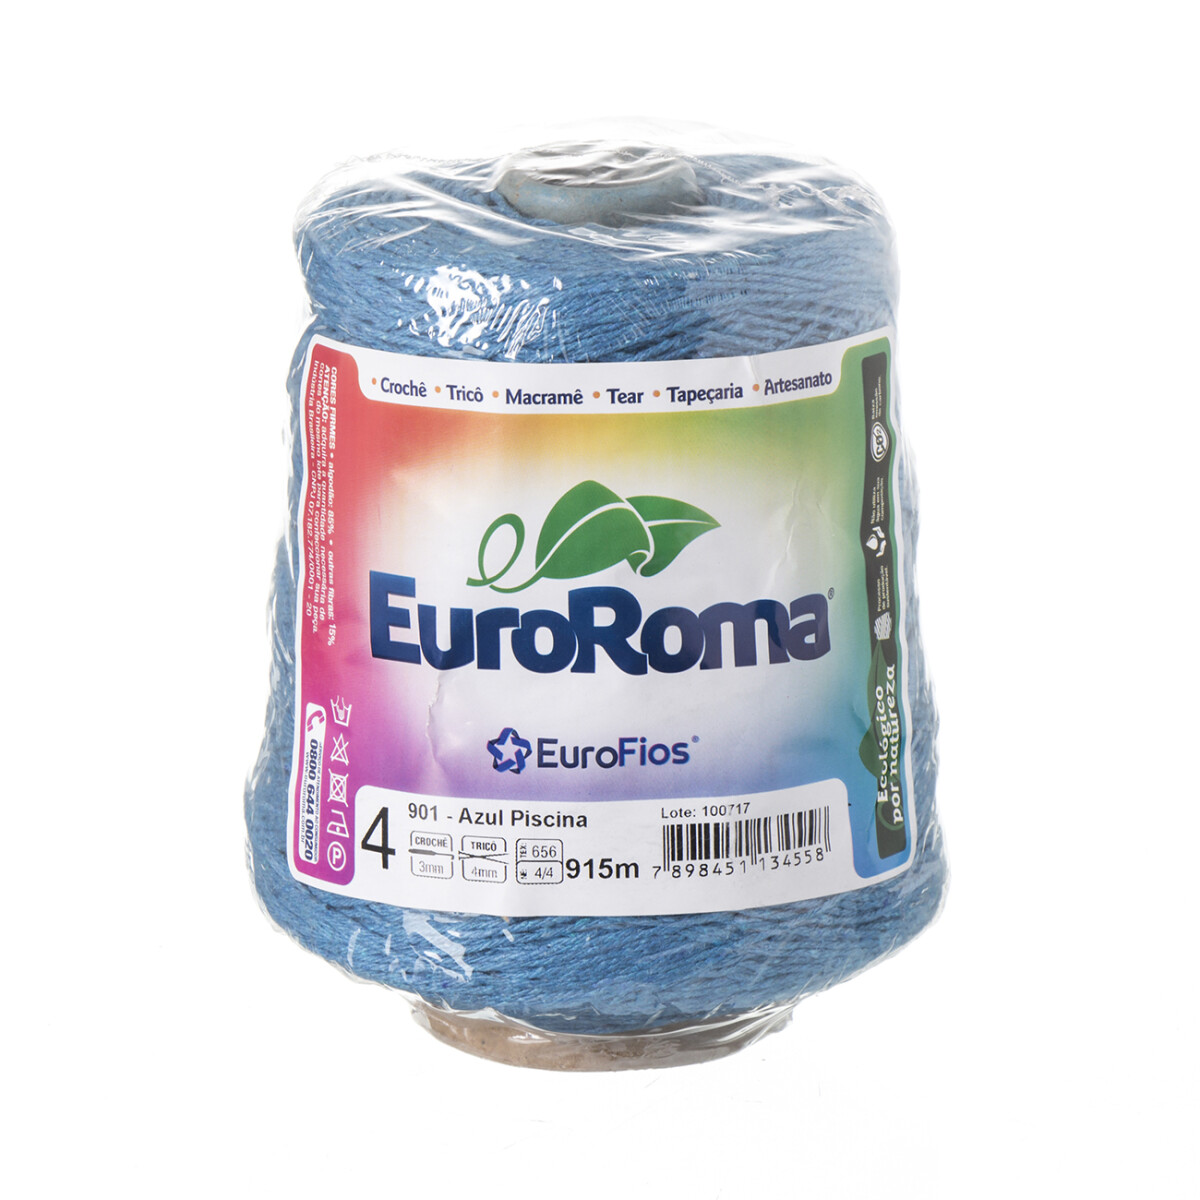 Euroroma algodón Colorido manualidades - azul piscina 